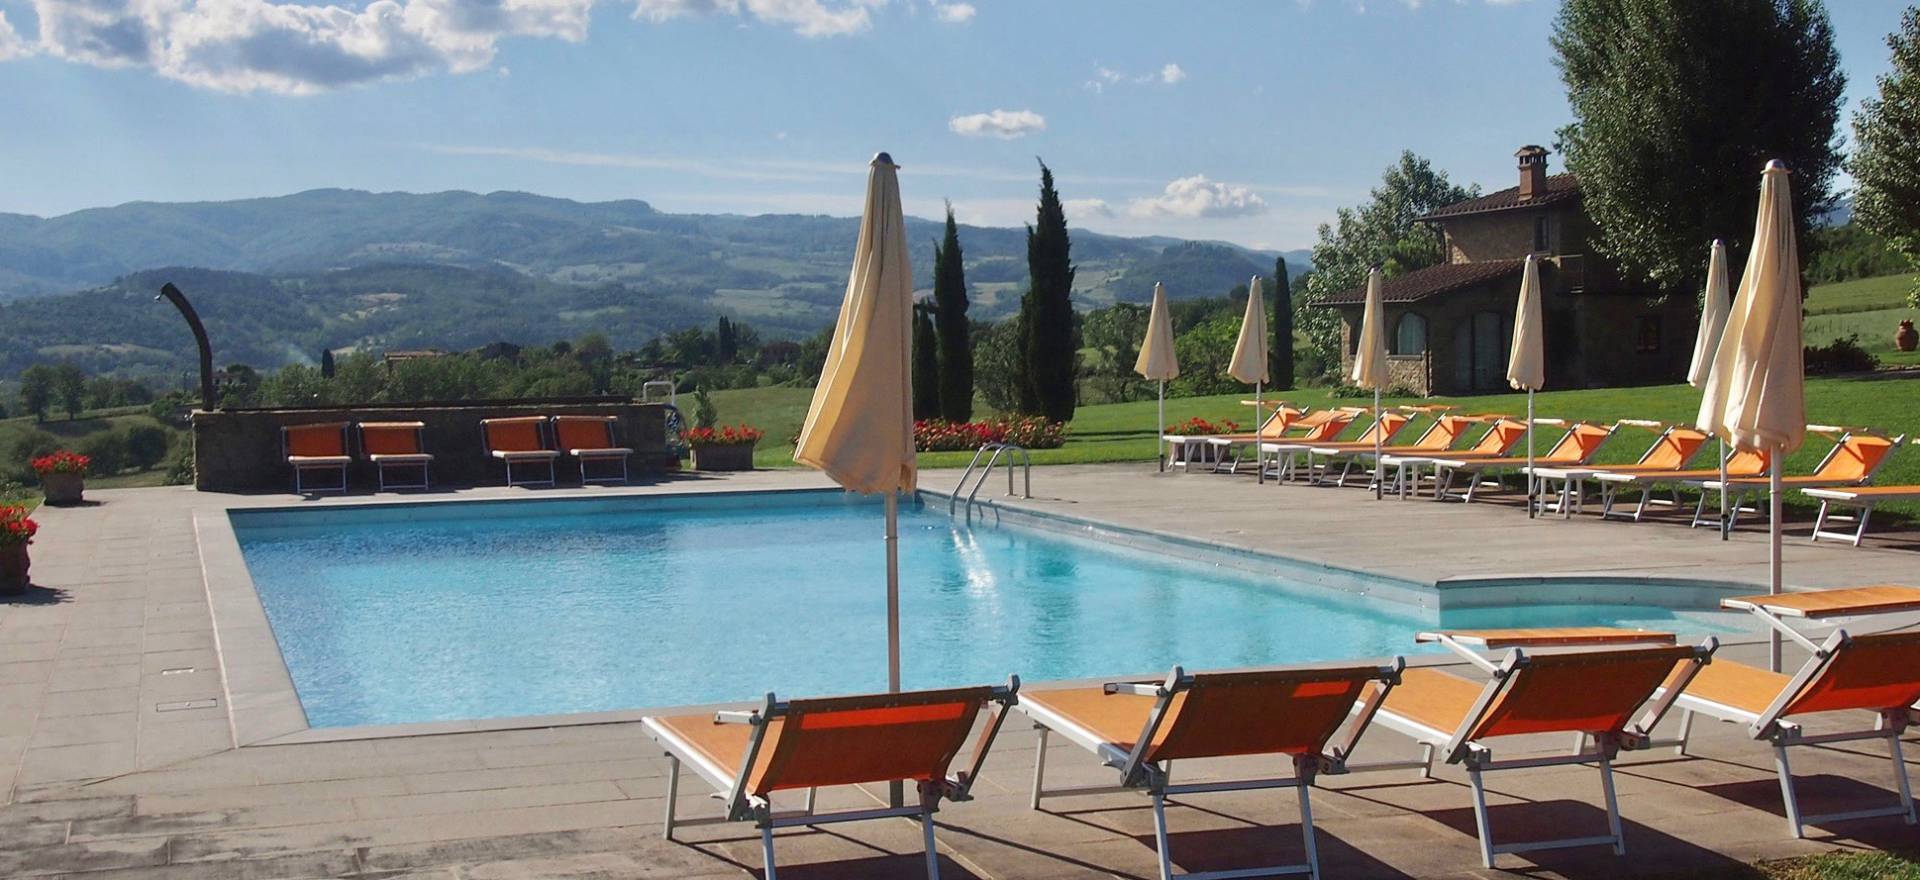 Agriturismo Toscane, zwembad en veel speelruimte